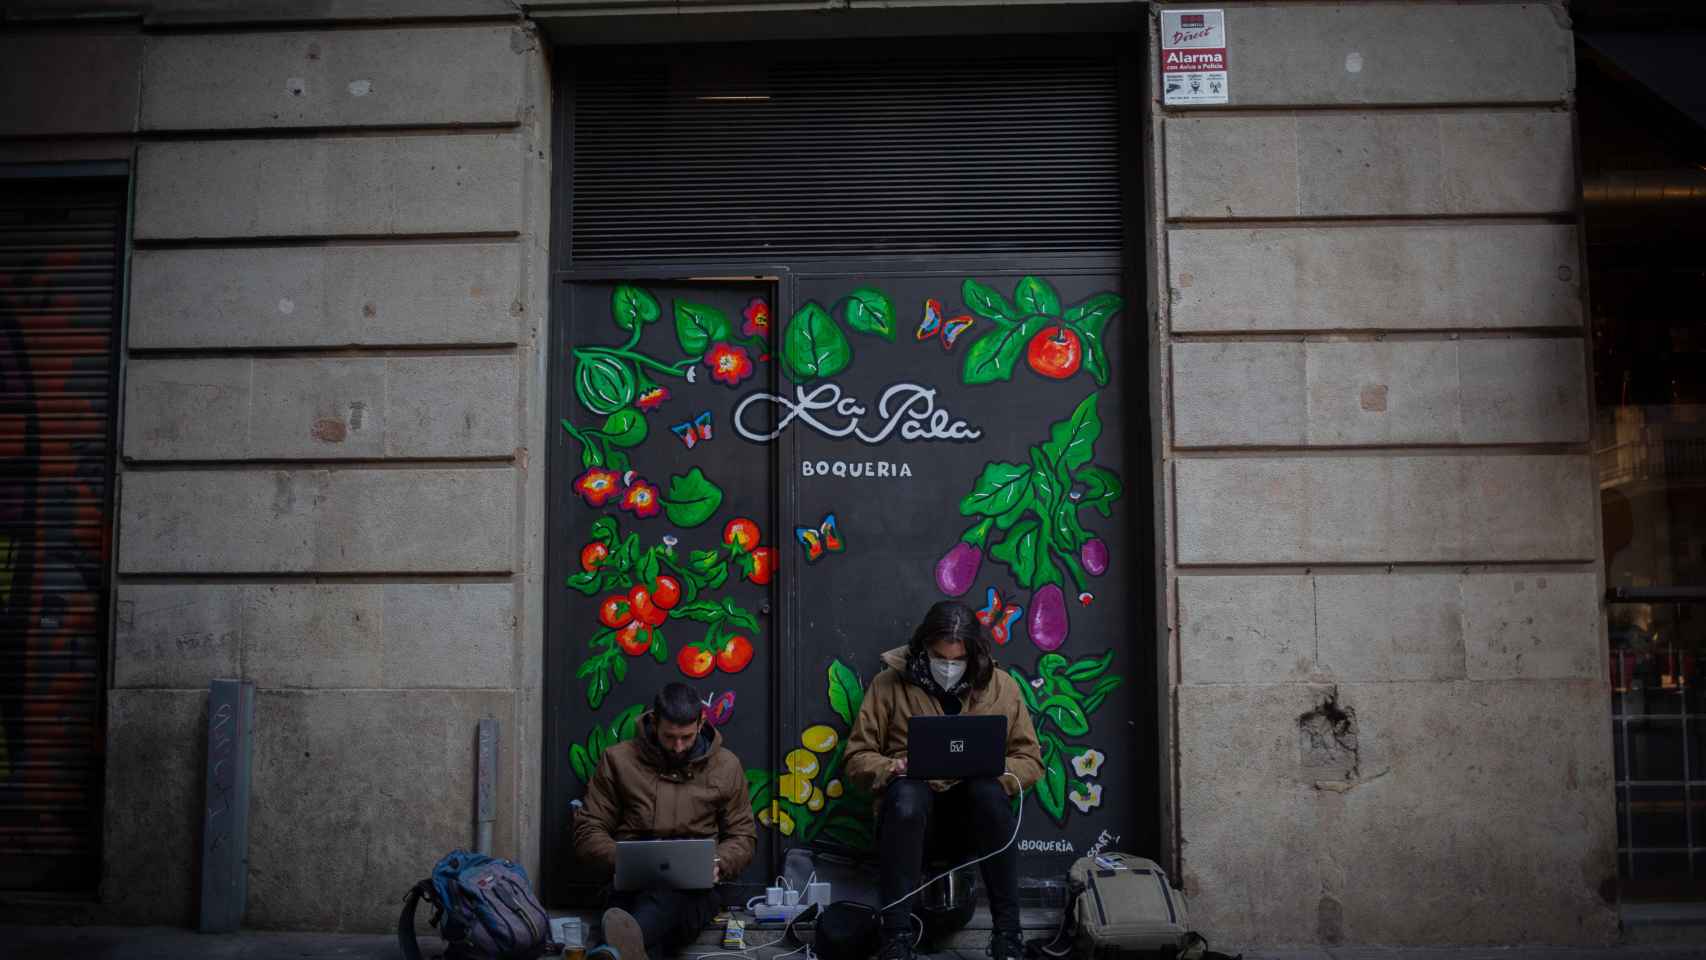 Uno de los locales comerciales cerrados en Barcelona durante la pandemia de coronavirus / EUROPA PRESS